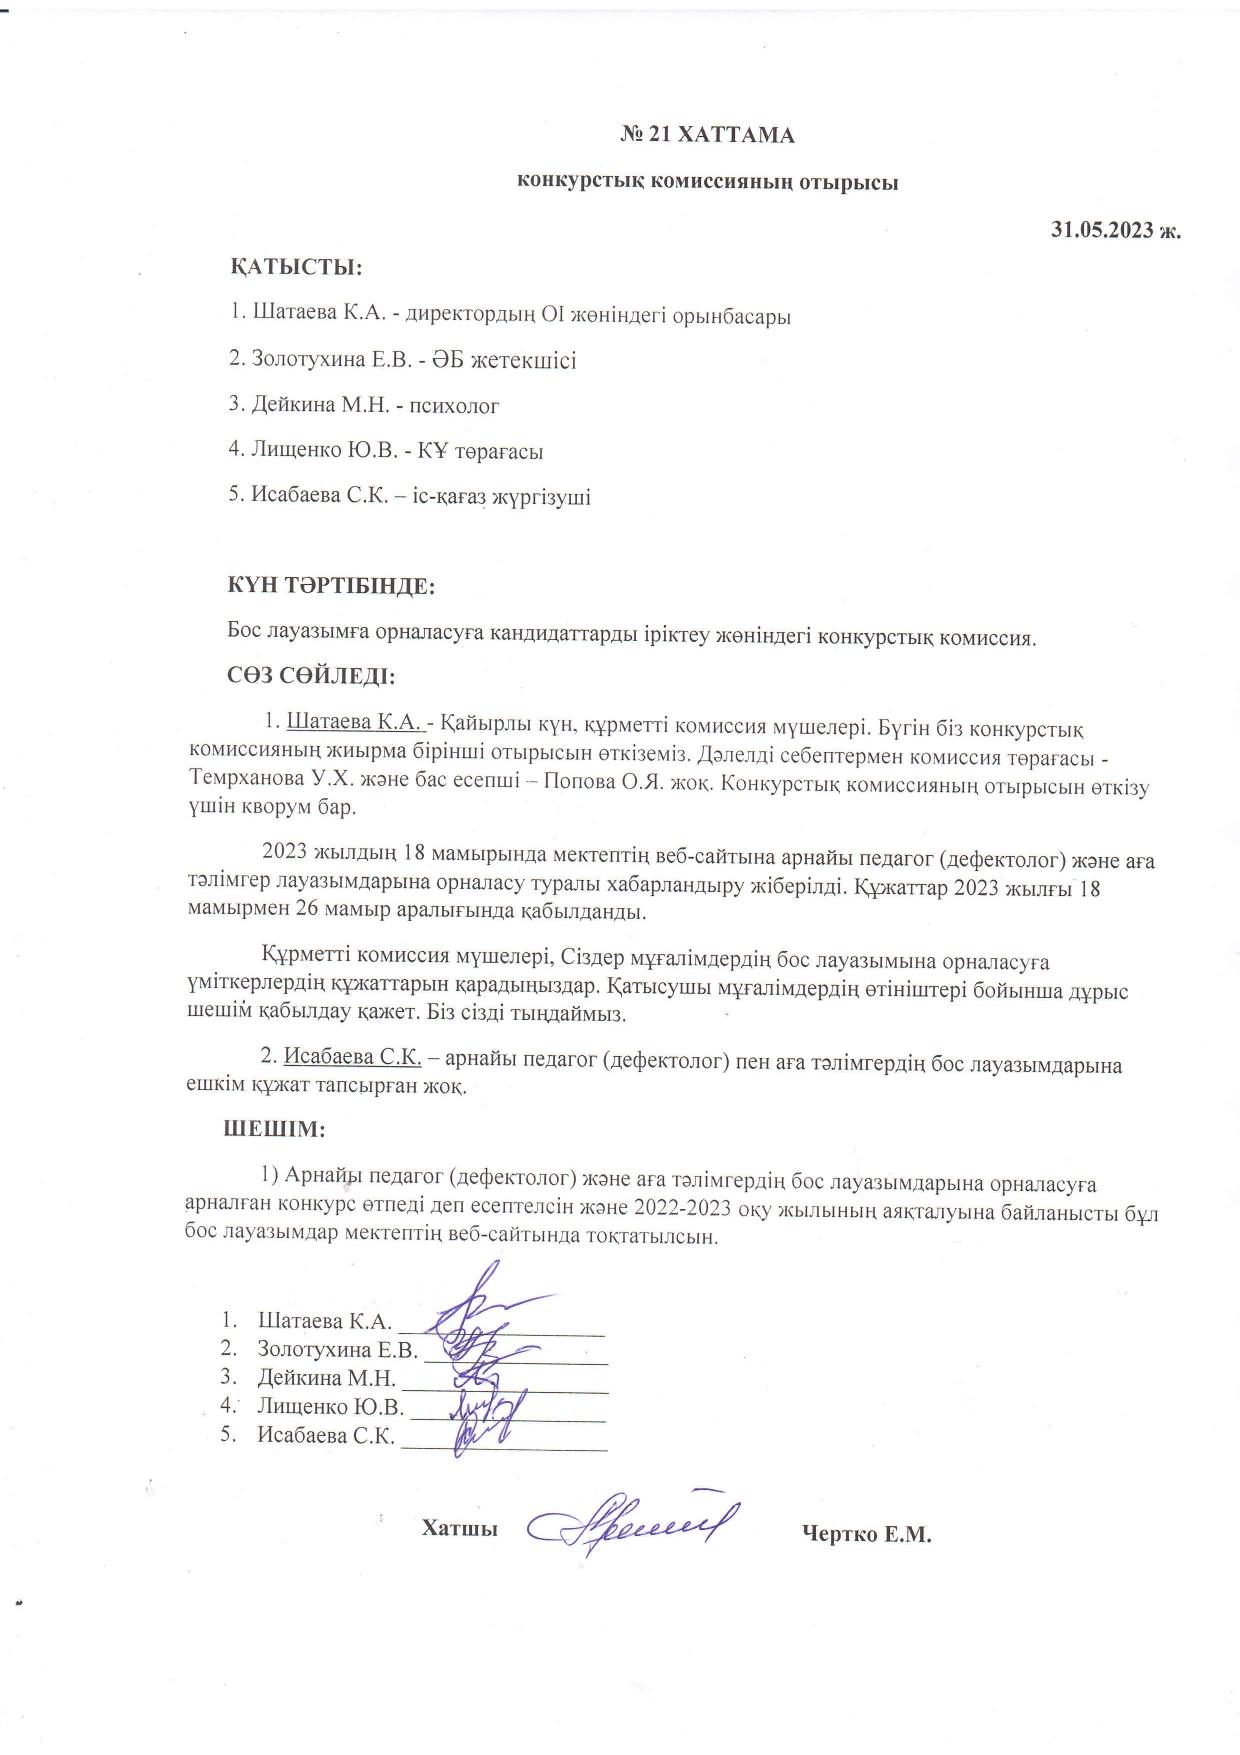 Конкурстық комиссия отырысының 31.05.2023 жылғы №21 ХАТТАМАСЫ